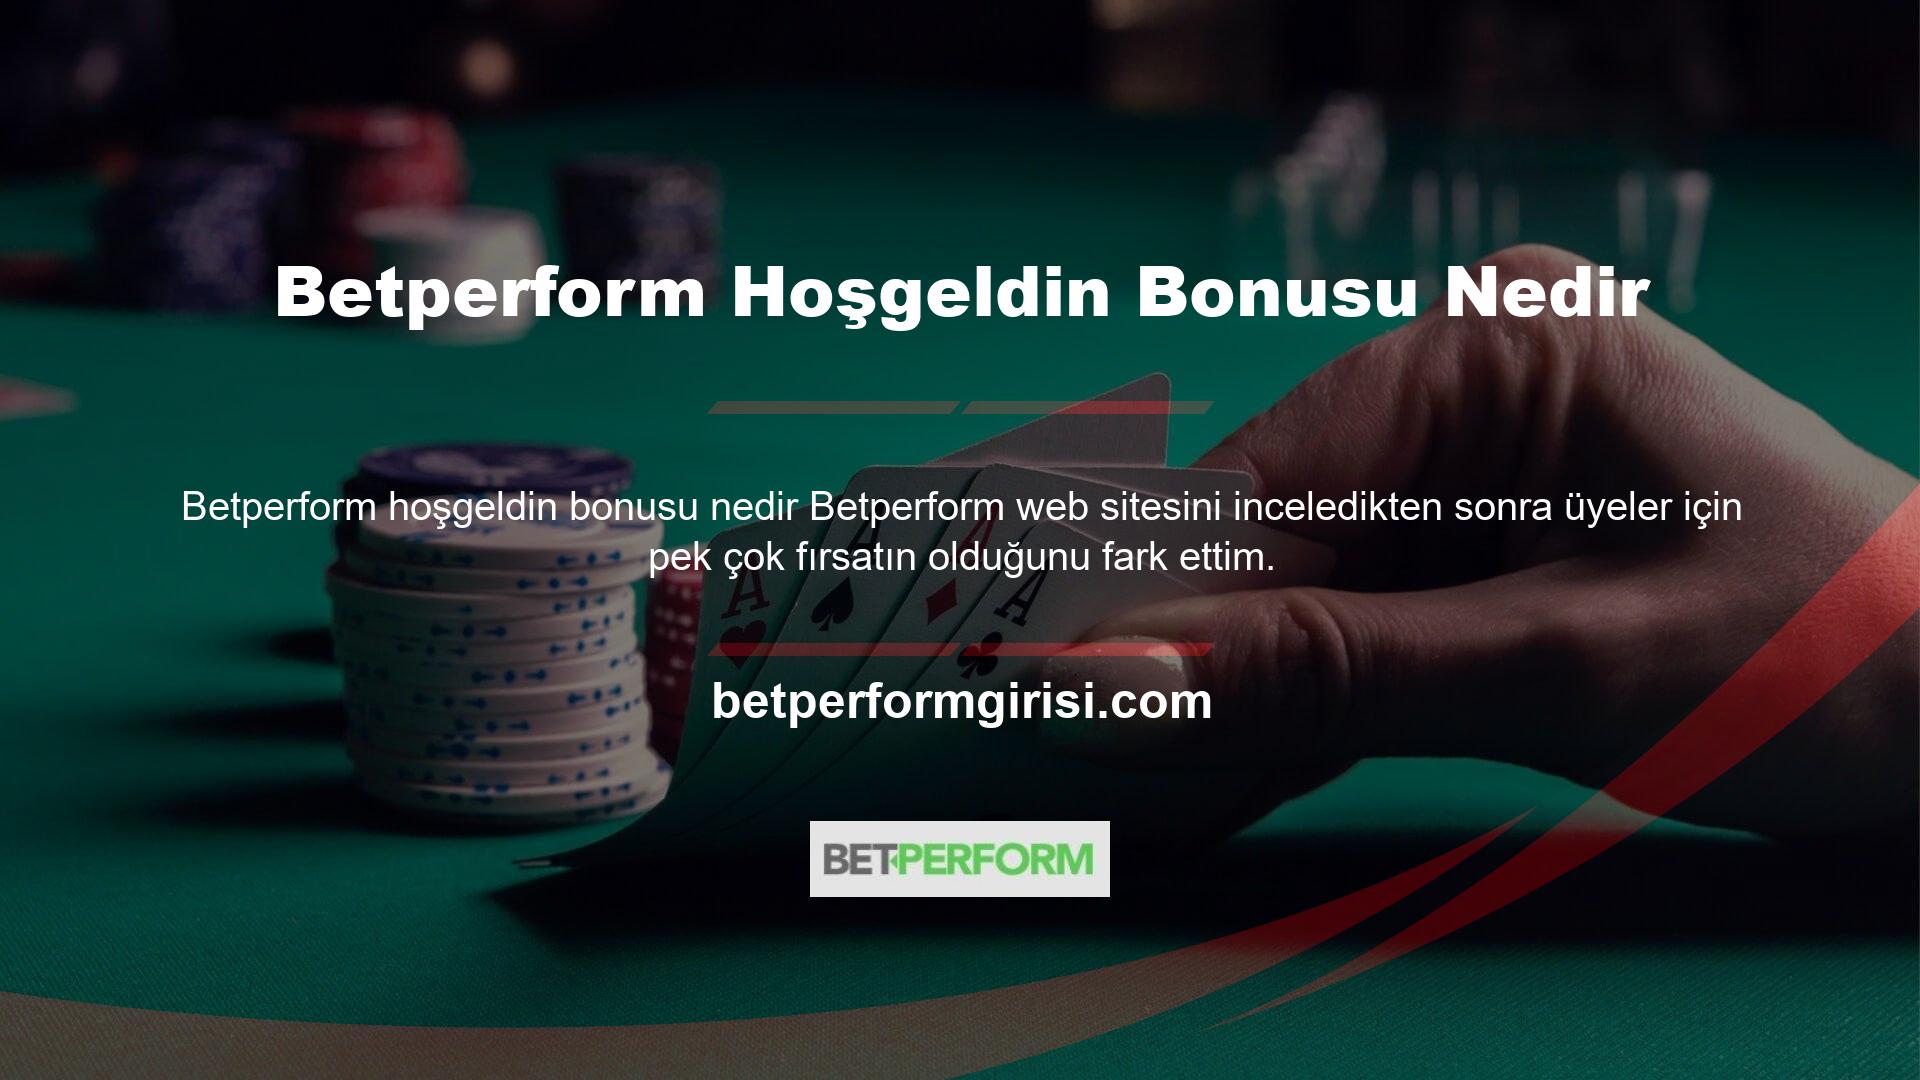 Siteye üye olduğunuz andan itibaren para kazanmaya başlayabileceğiniz Betperform sitesinde bahis heyecanını yaşayın